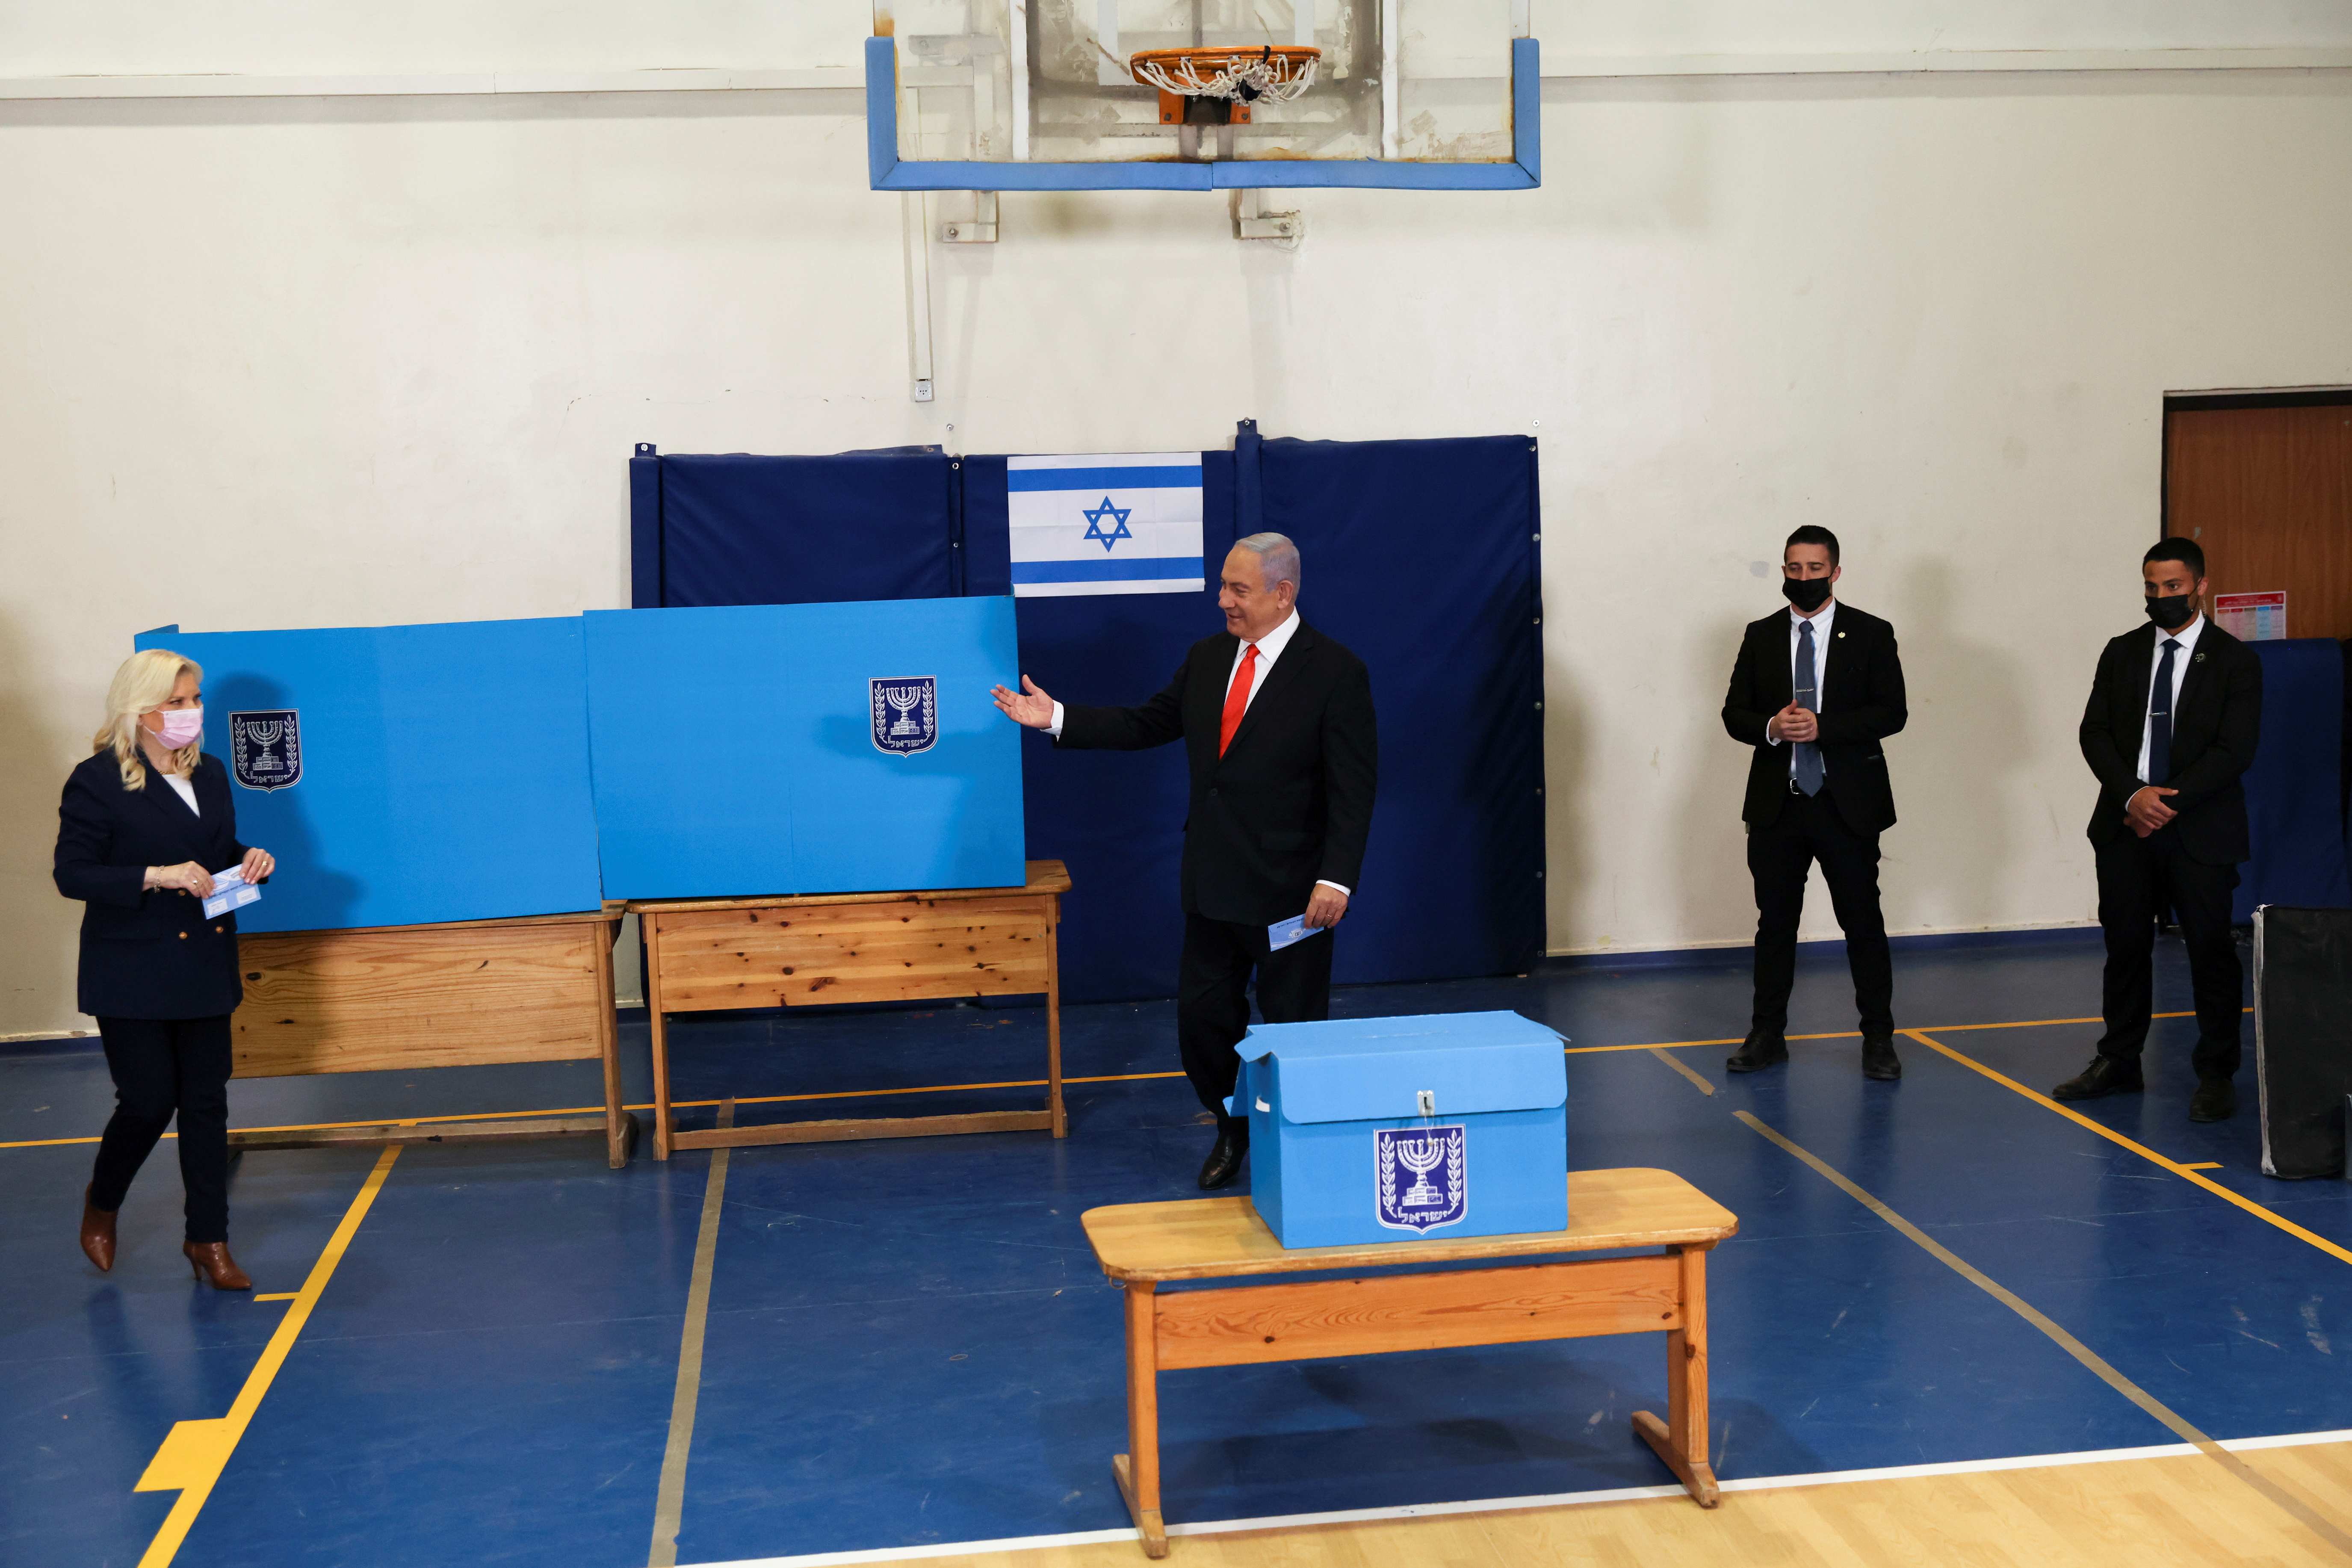 Los israelíes deciden en las urnas el destino de Netanyahu